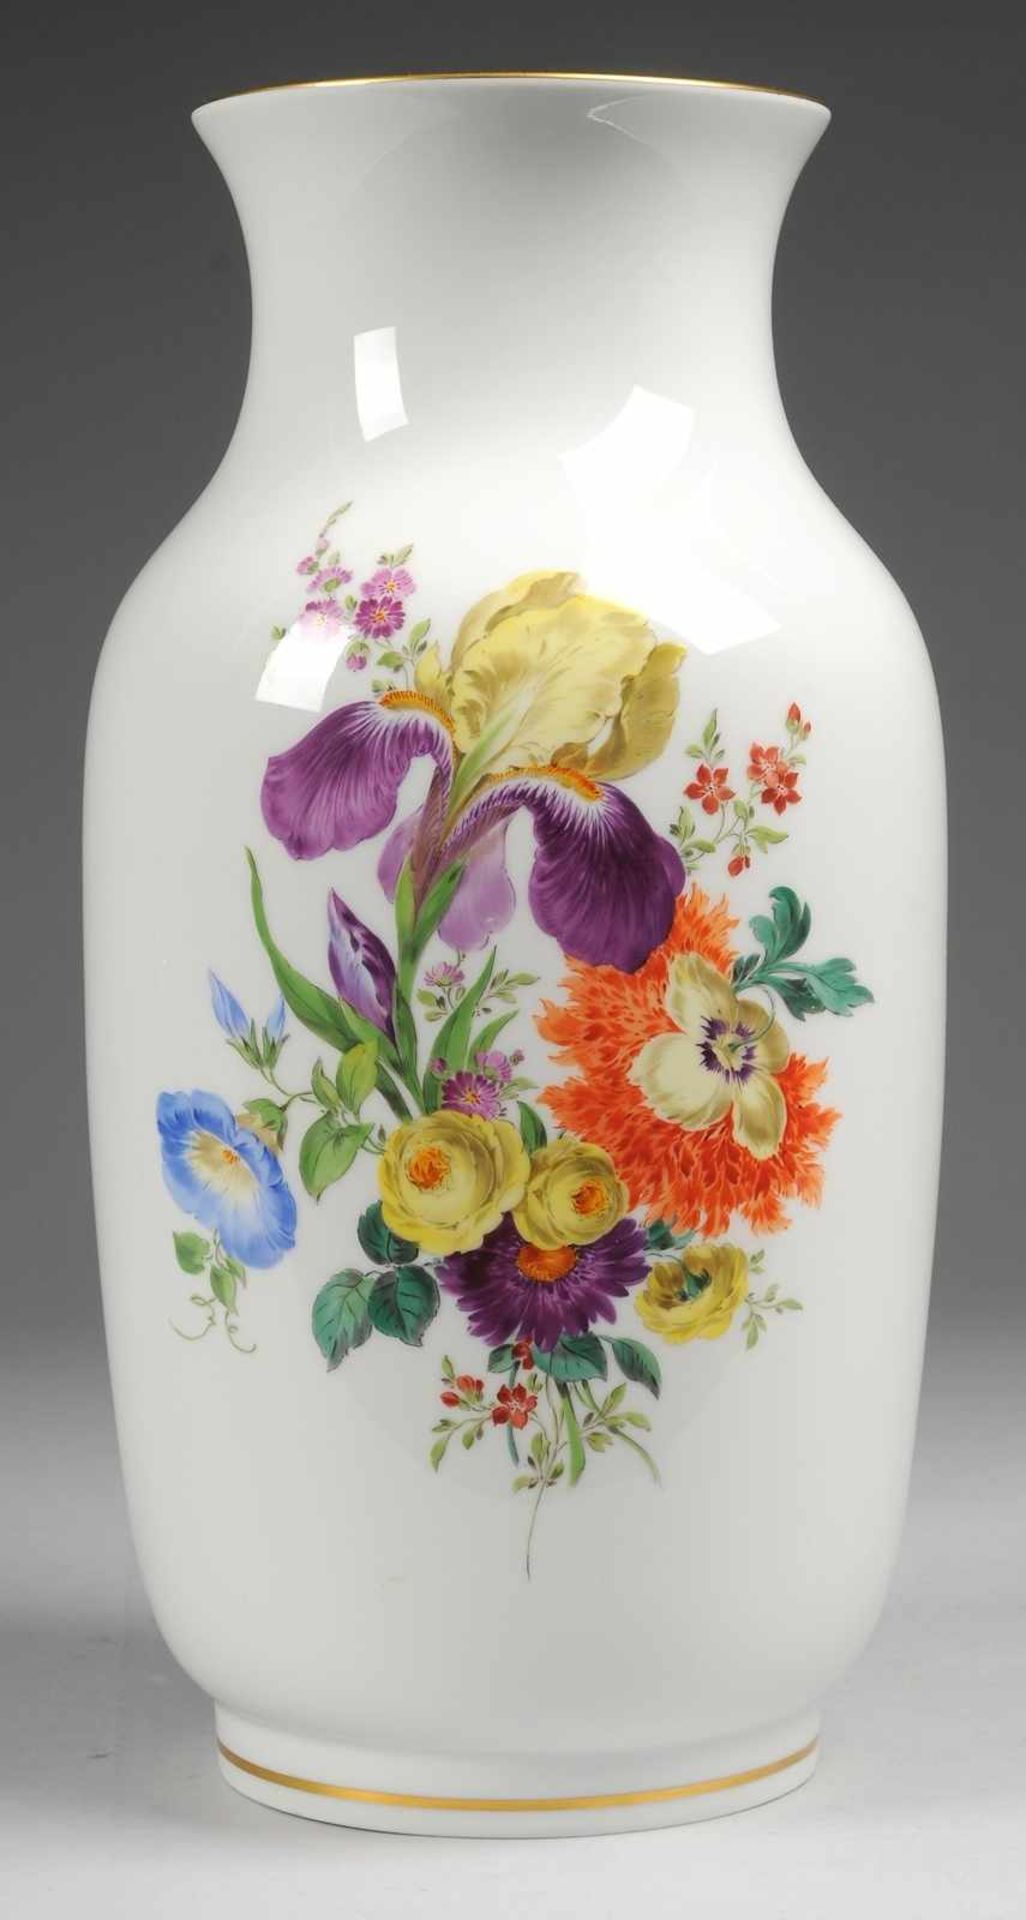 Große Vase "Bunte Blume" Weiß, glasiert. Ovoider Korpus mit eingezogenem Hals u. ausgestellter